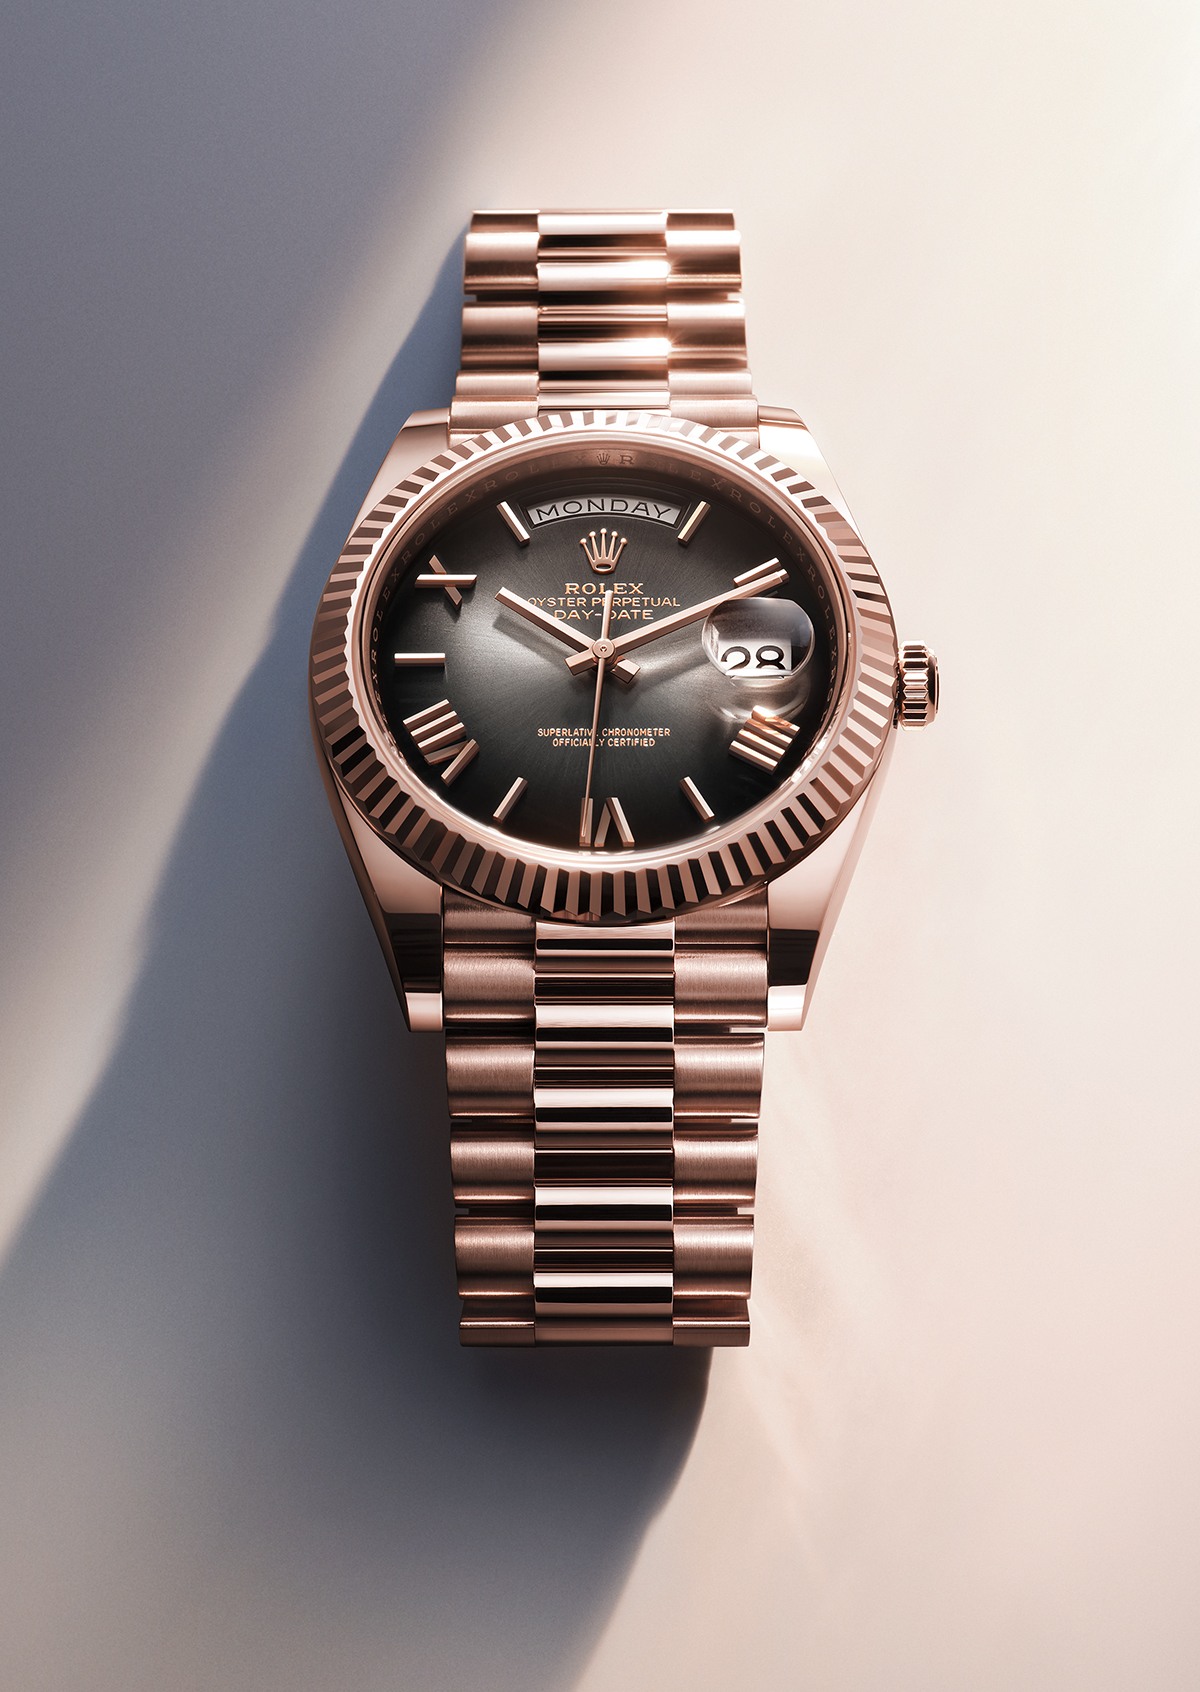 Rolex Day-Date 40 watch: platinum - m228396tbr-0002